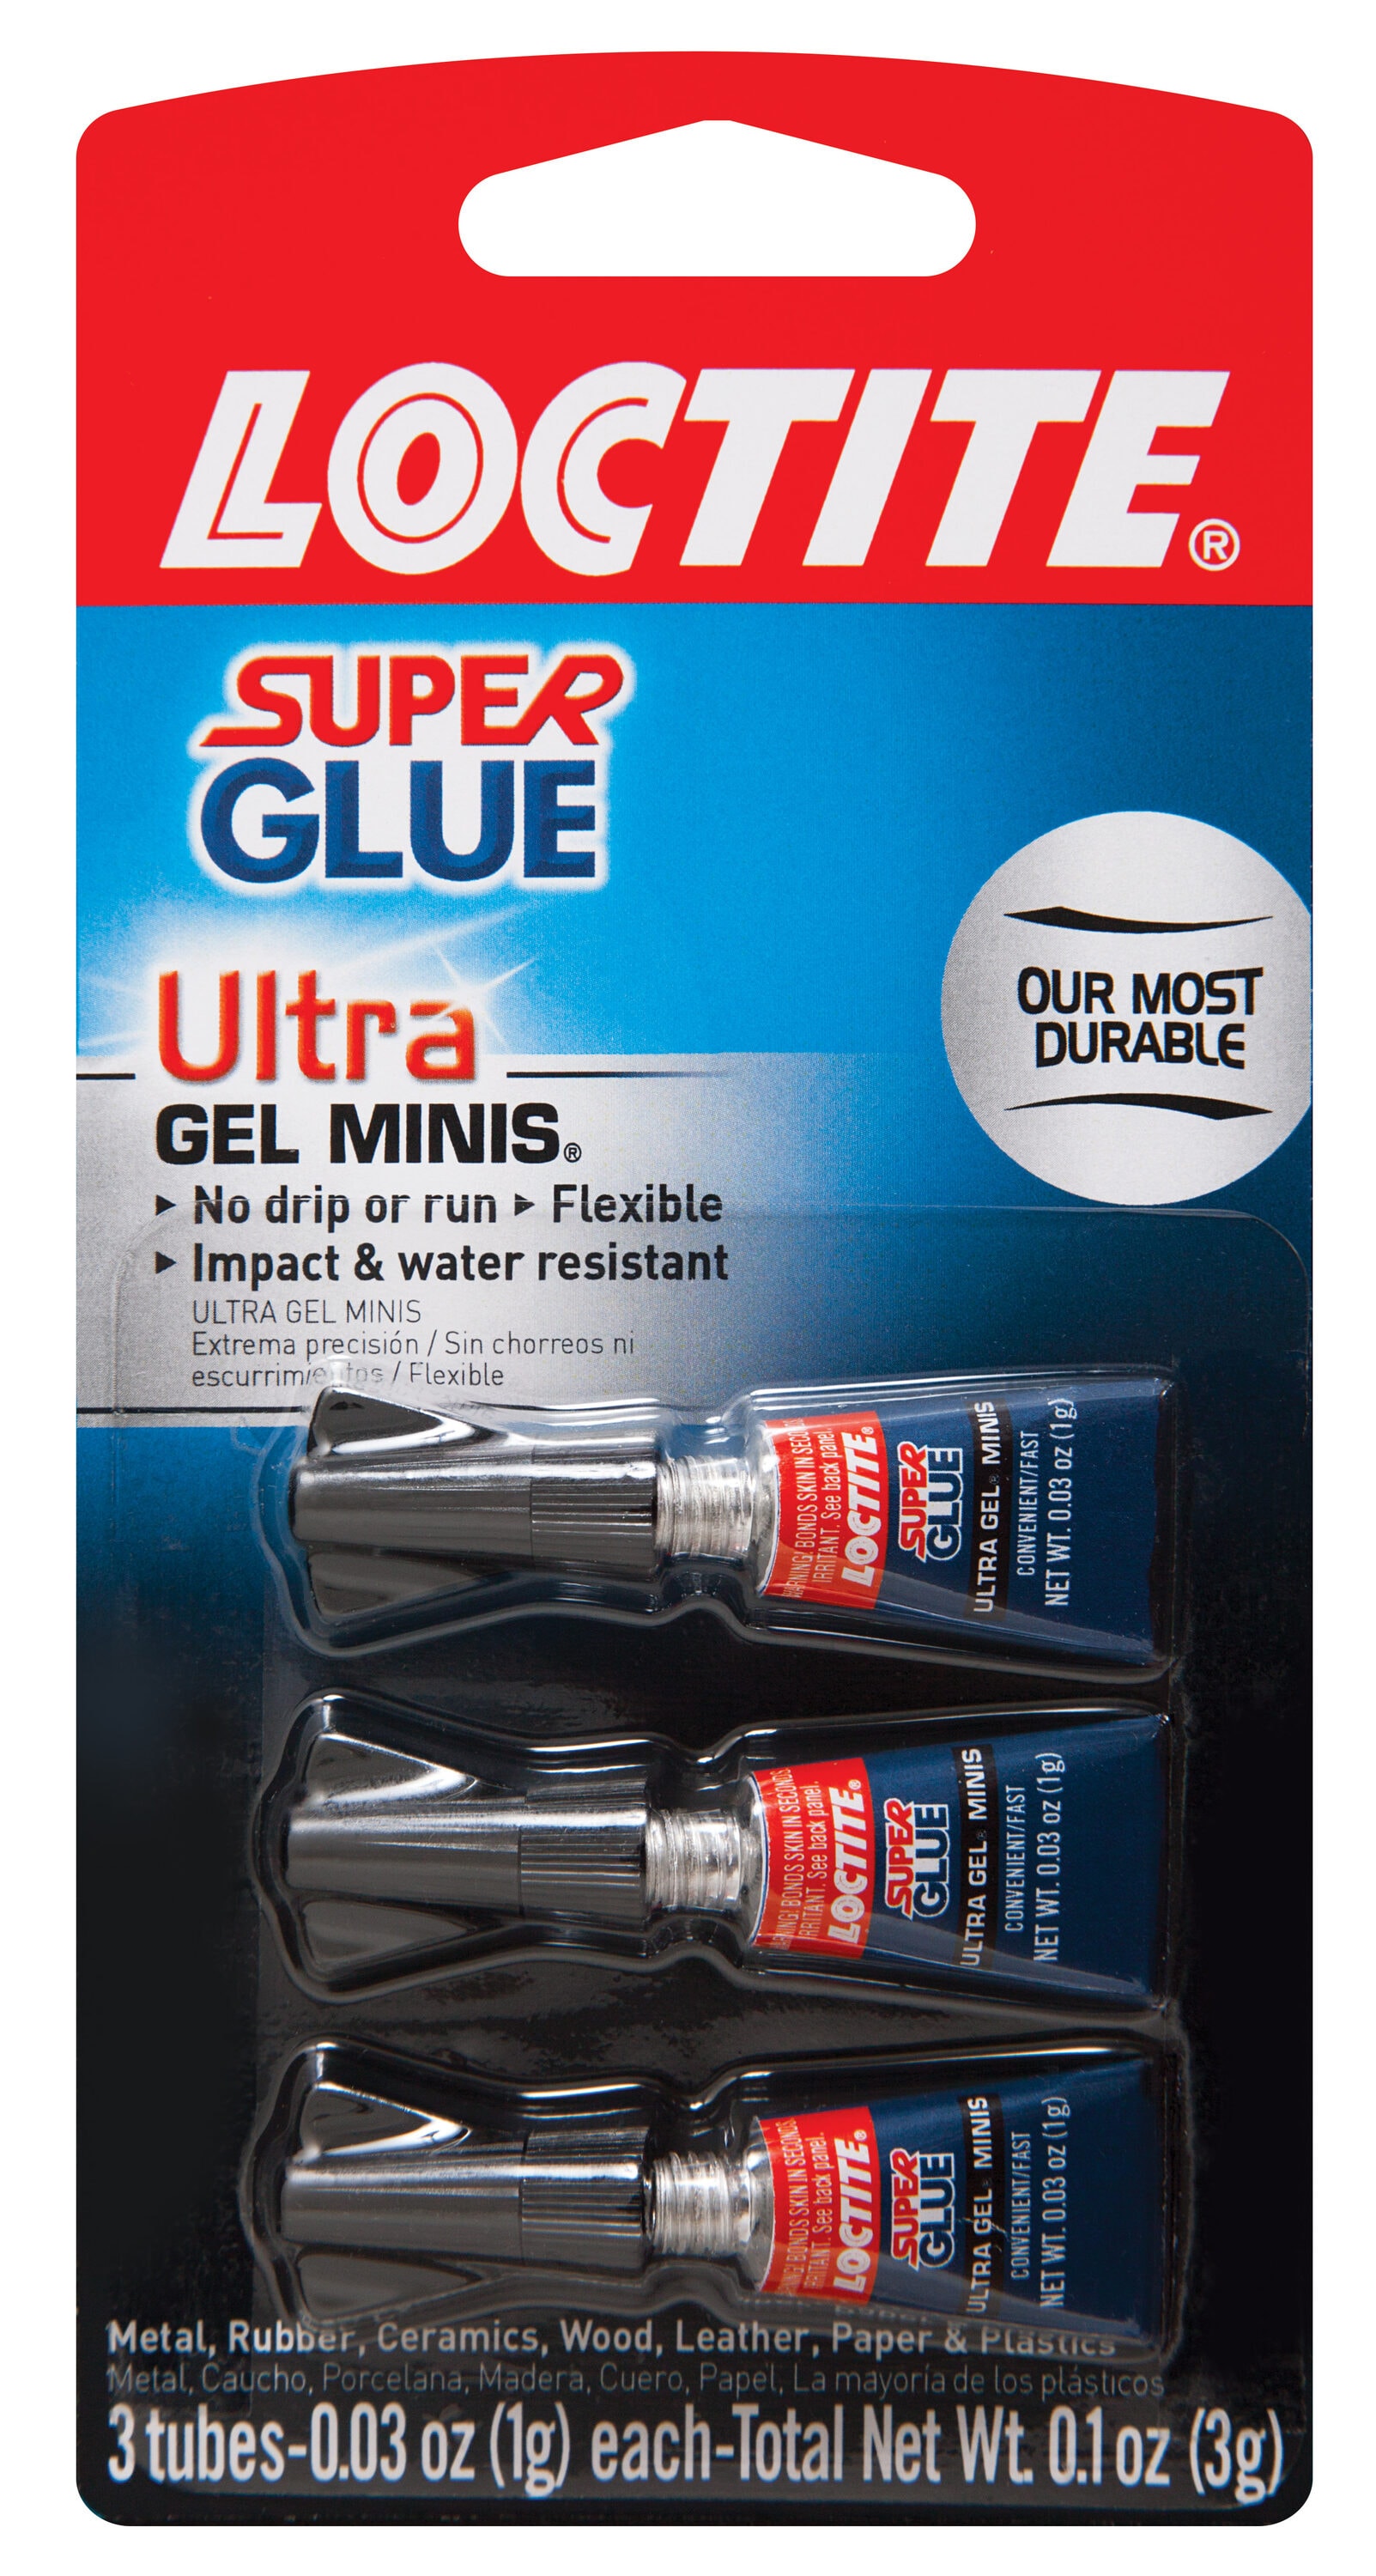 Super Glue Original Formula, 0.1 oz - Clear Glue for Plastic, Wood, Ceramic Glue Repair - Heavy Duty, Strong Adhesive - Multipurpose Super Glue for RU